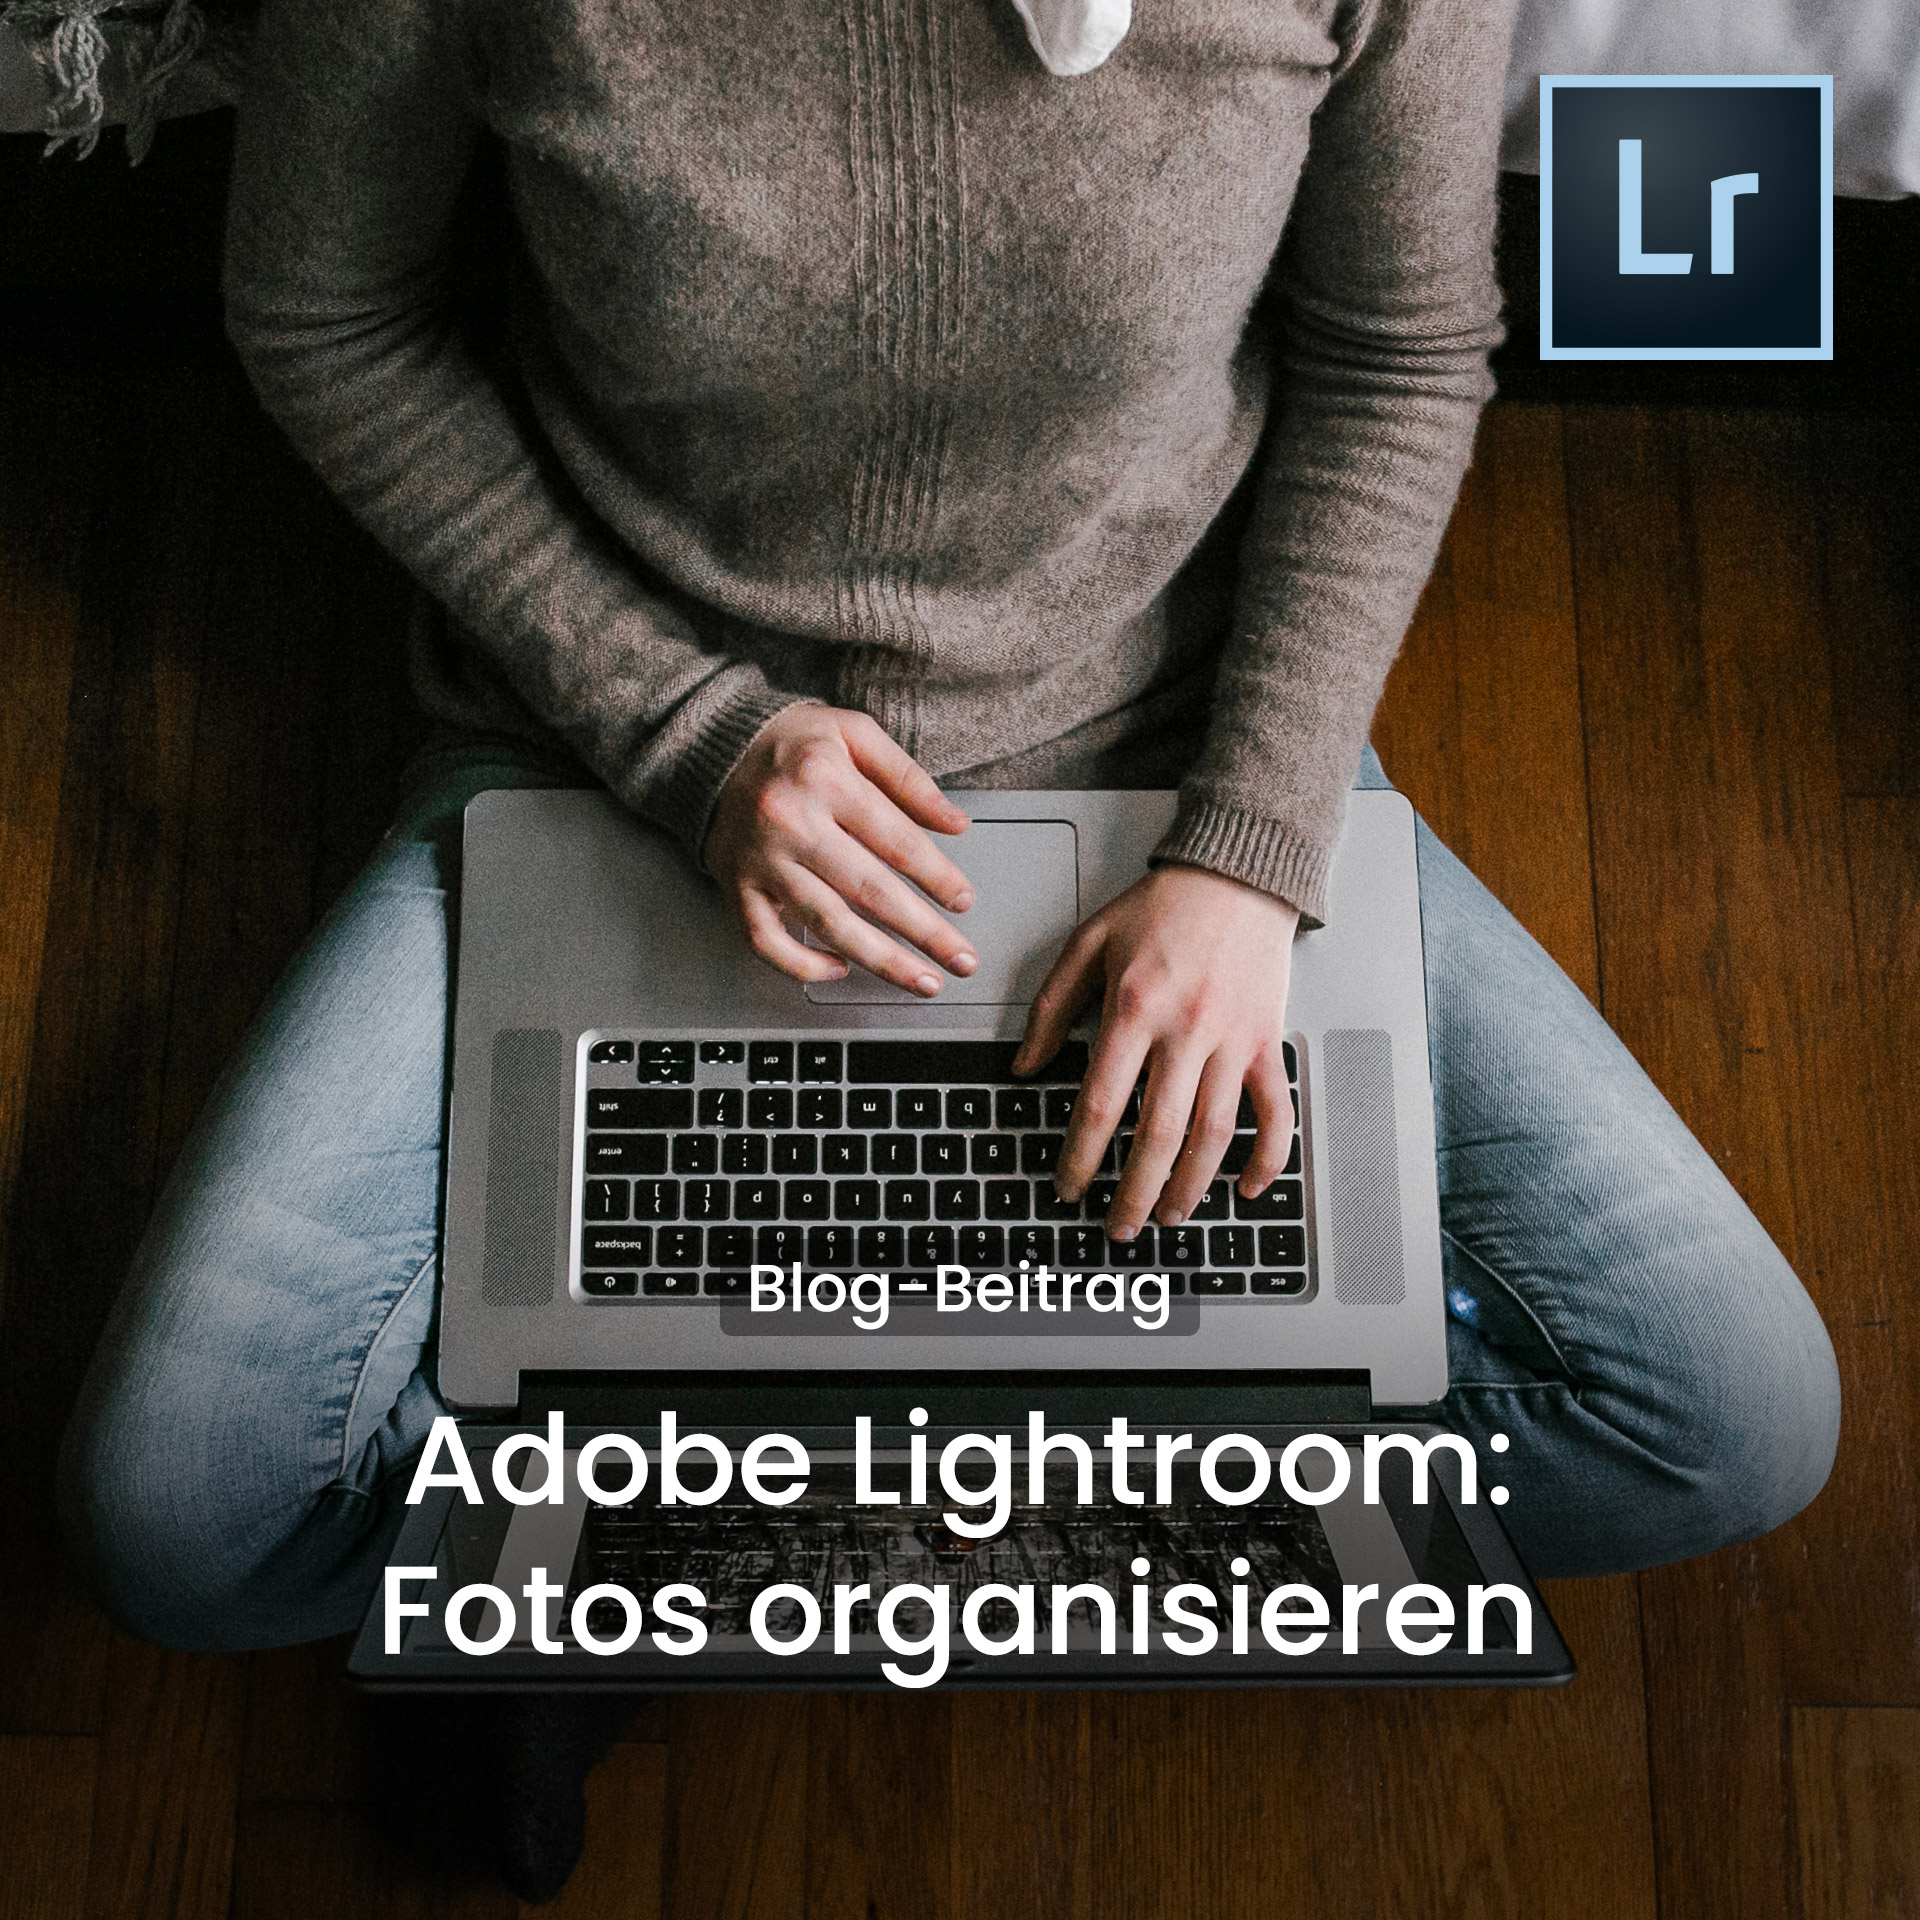 Adobe Lightroom für Fotografen - Fotos organisieren und entwickeln